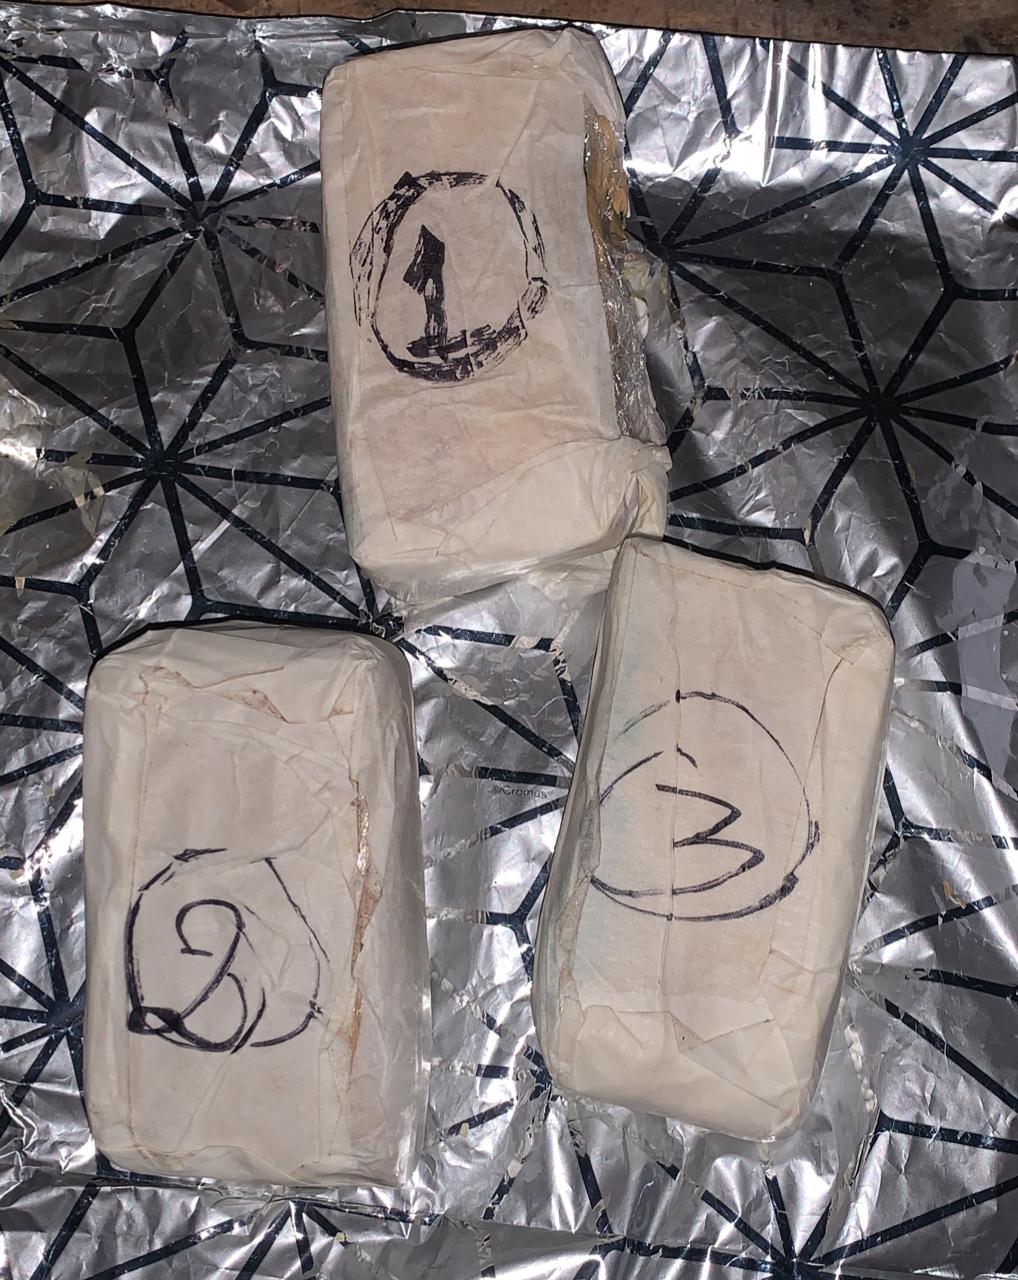 Antinarcóticos detiene a una mujer con tres paquetes de supuesta cocaína